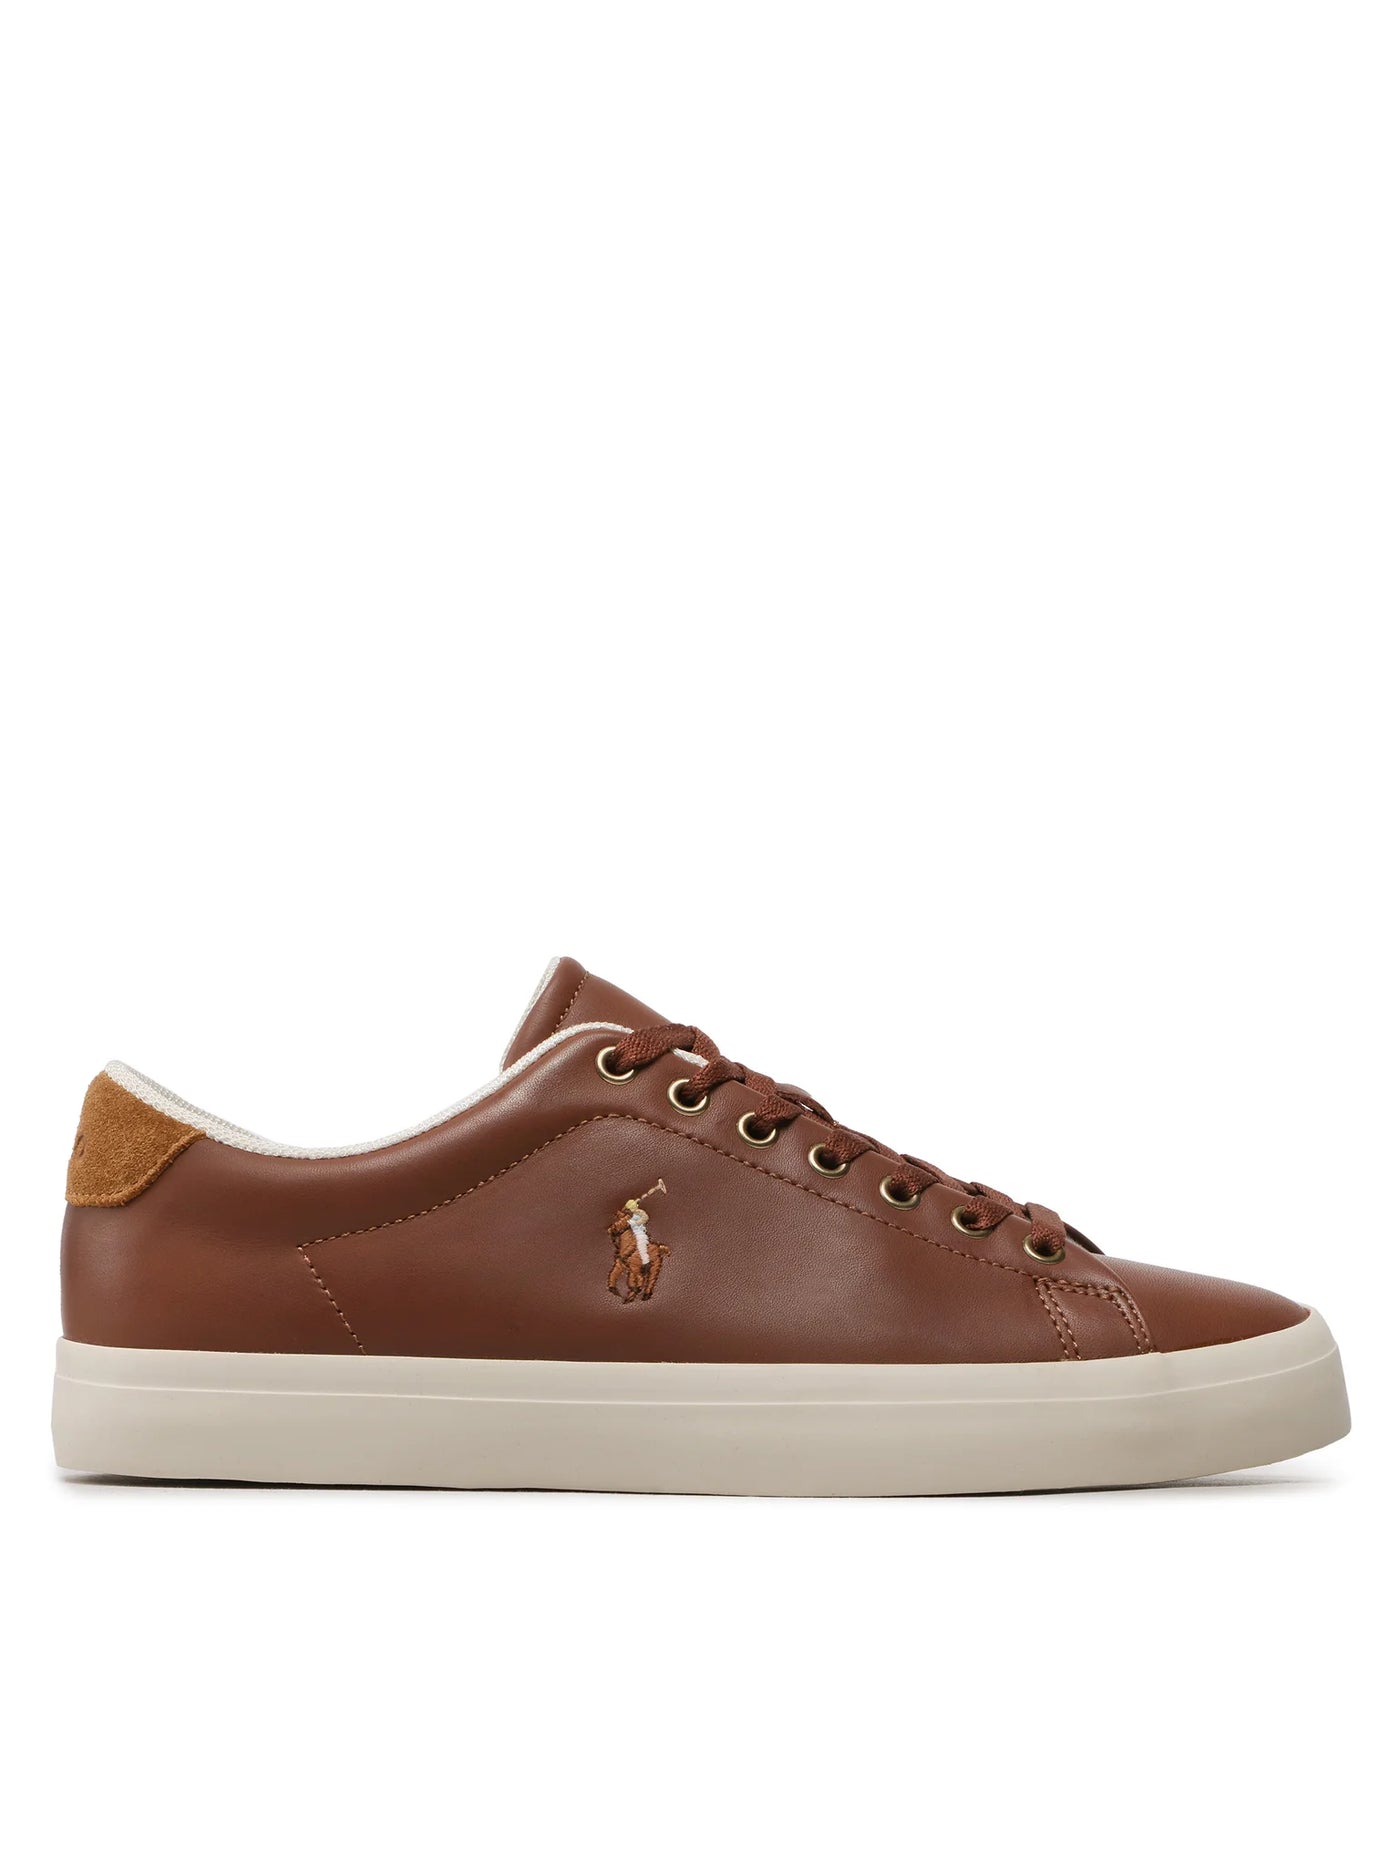 Ralph Lauren Longwood Leather Sneaker | Tan